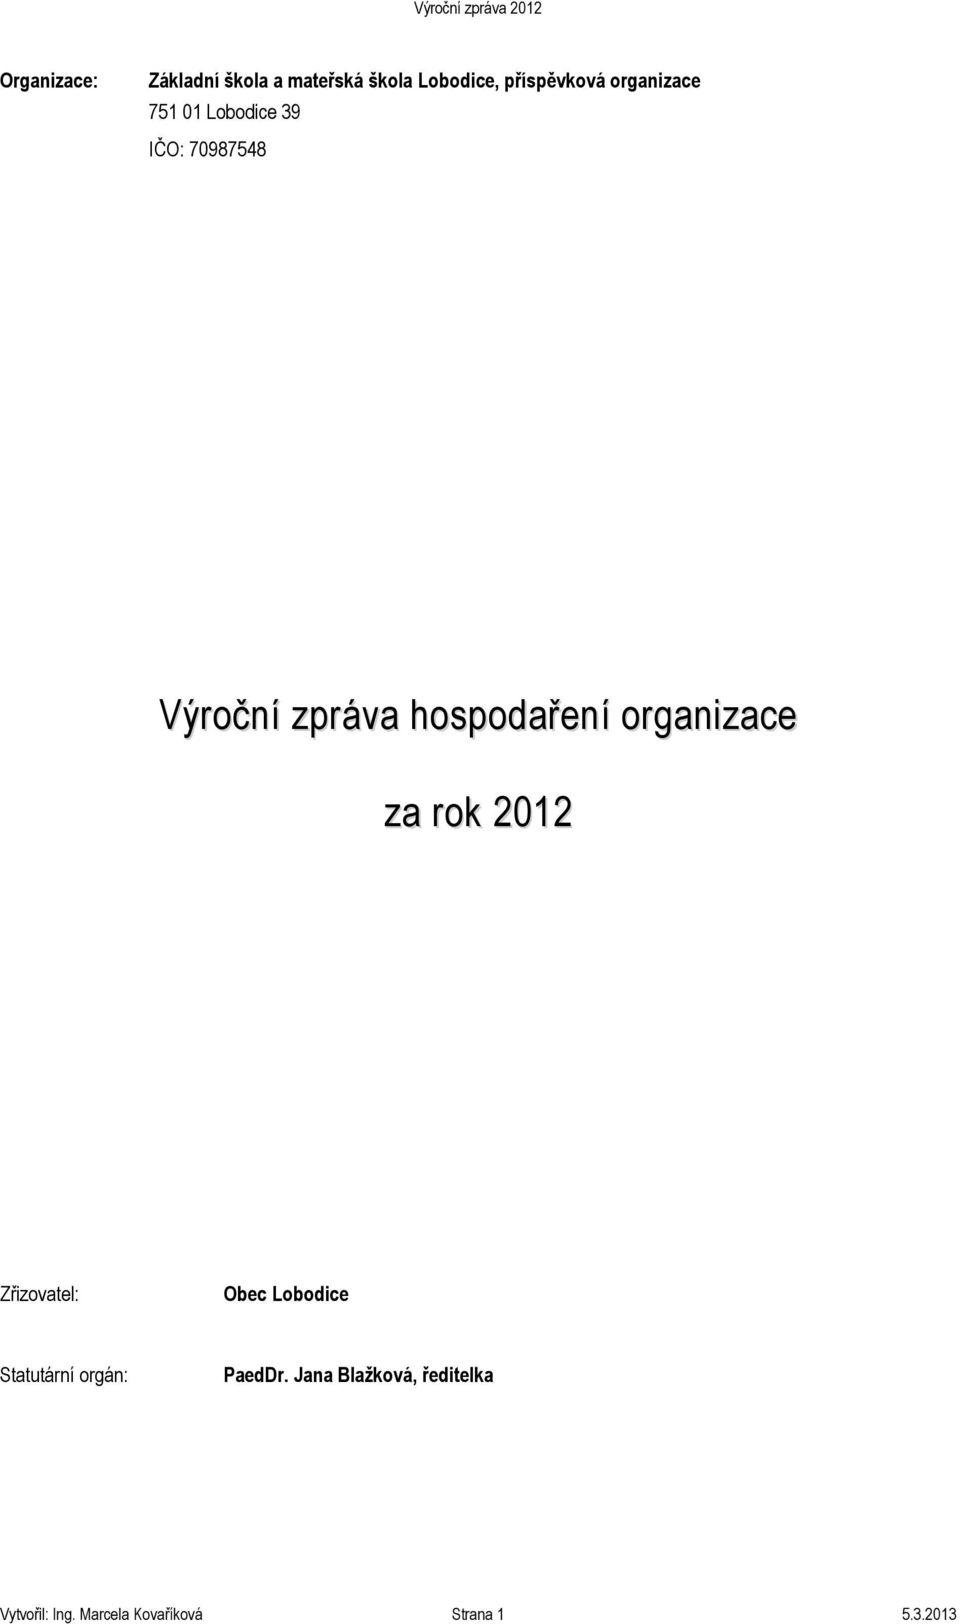 organizace za rok 2012 Zřizovatel: Obec Lobodice Statutární orgán: